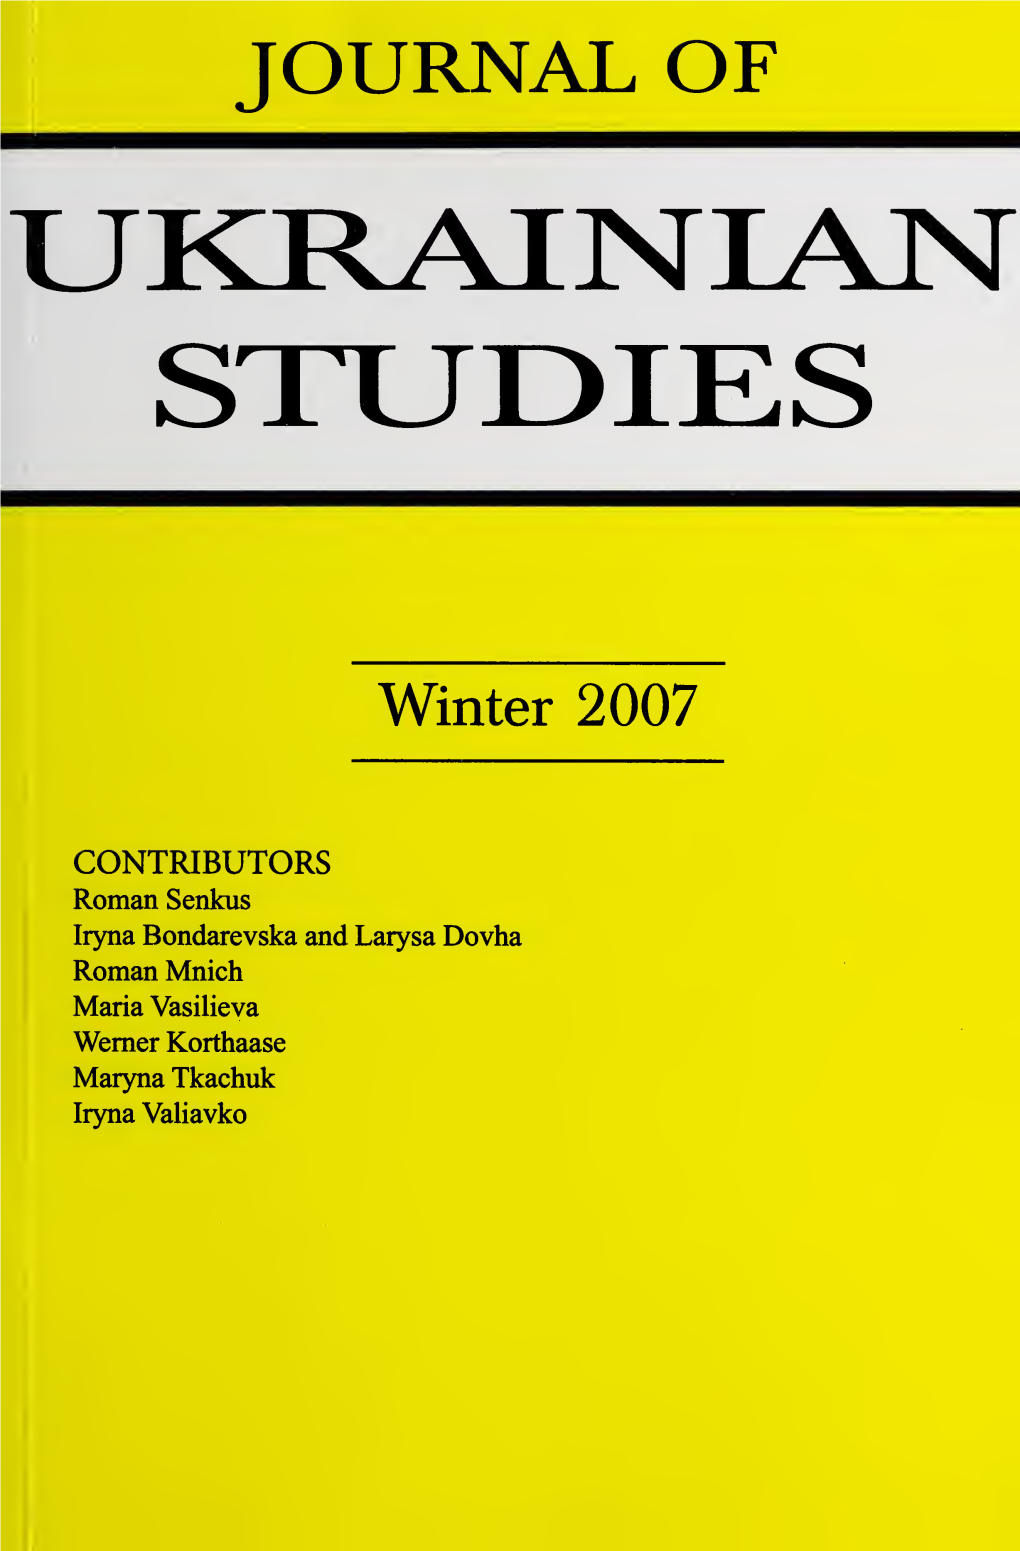 Journal of Ukrainian Studies